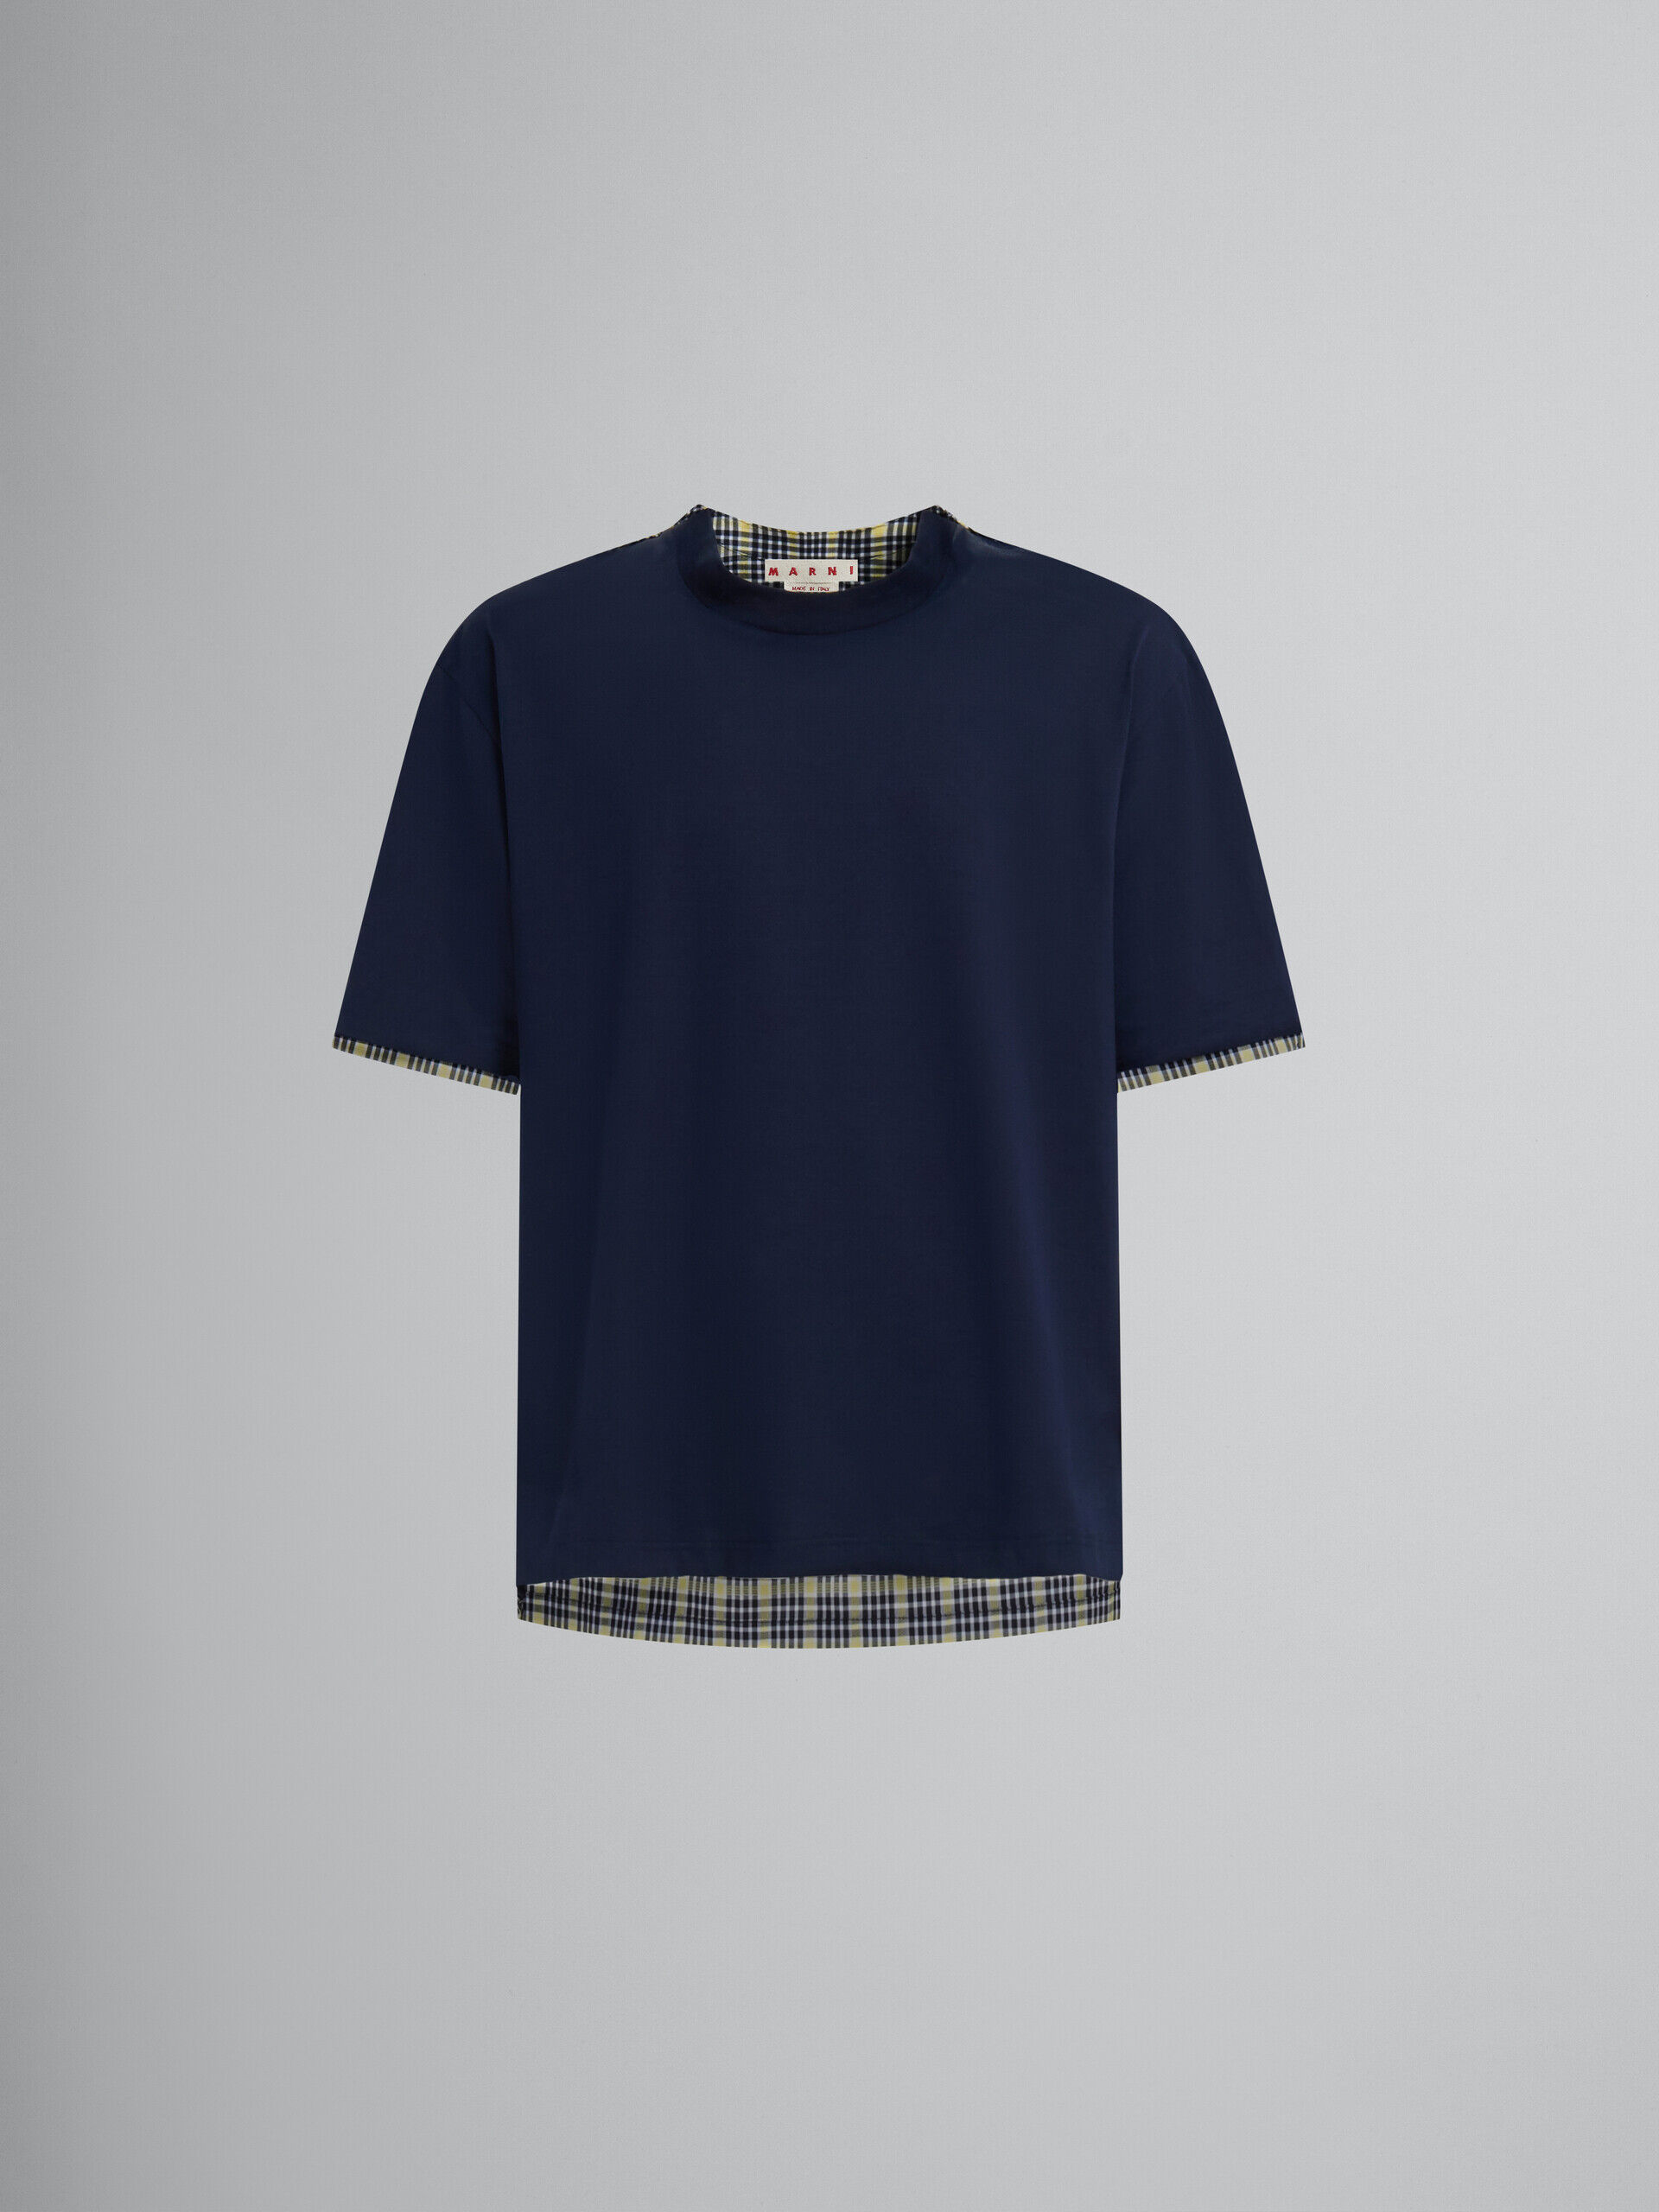 ディープブルー オーガニックコットン製Tシャツ、チェックバック | Marni